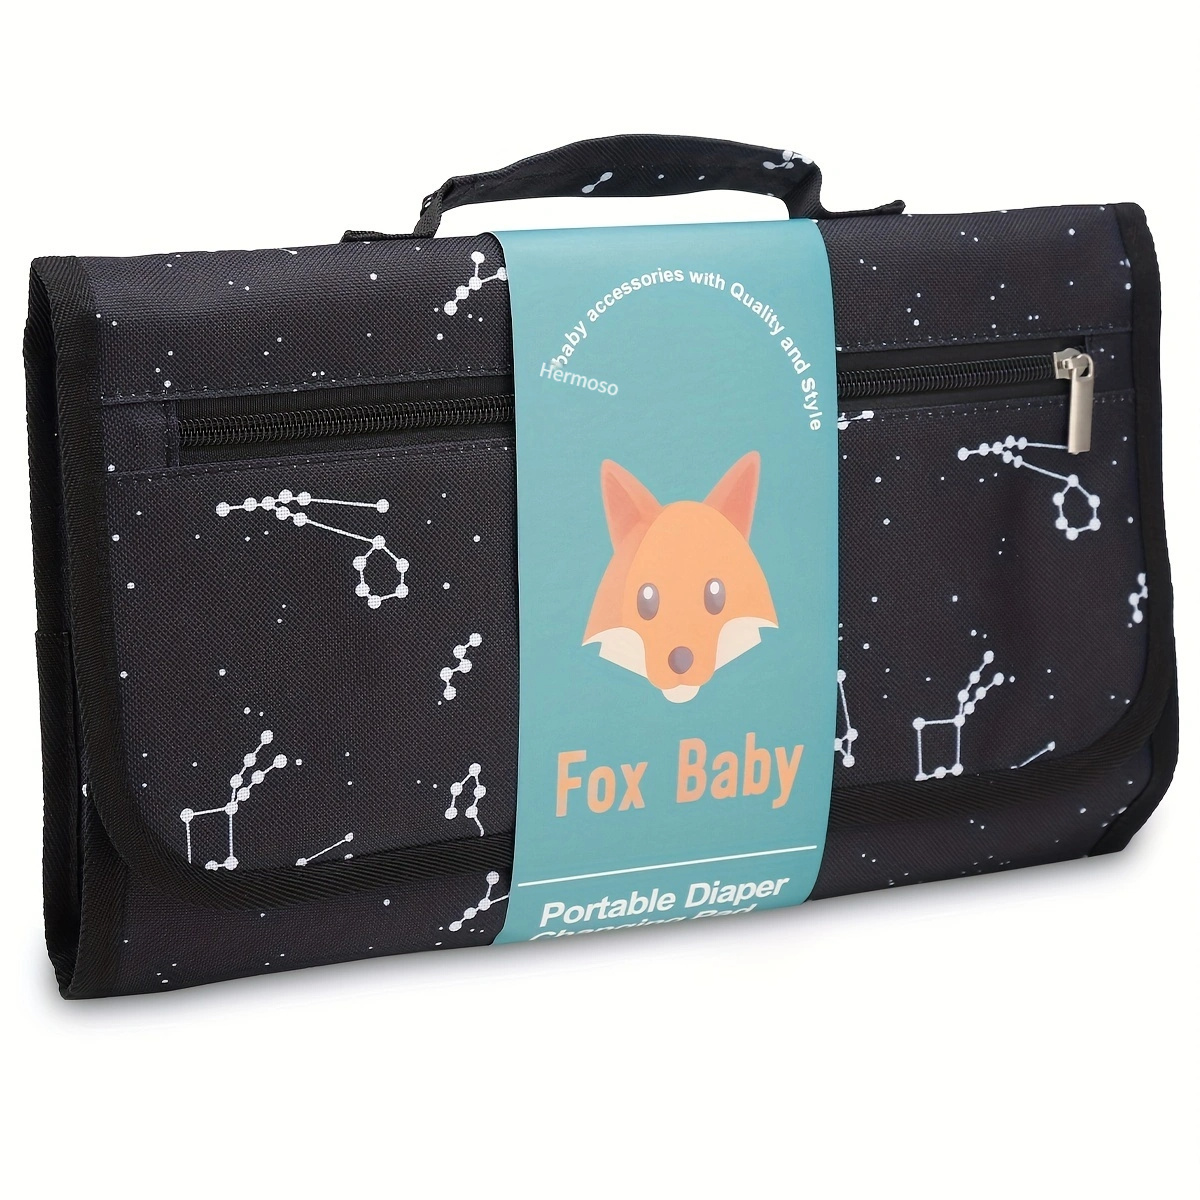 Cambiador de bebé de Lil Fox. Cambiador portátil para bolsa de pañales de  bebé o cambiador. Cambiador de pañales con una sola mano. Regalos de baby